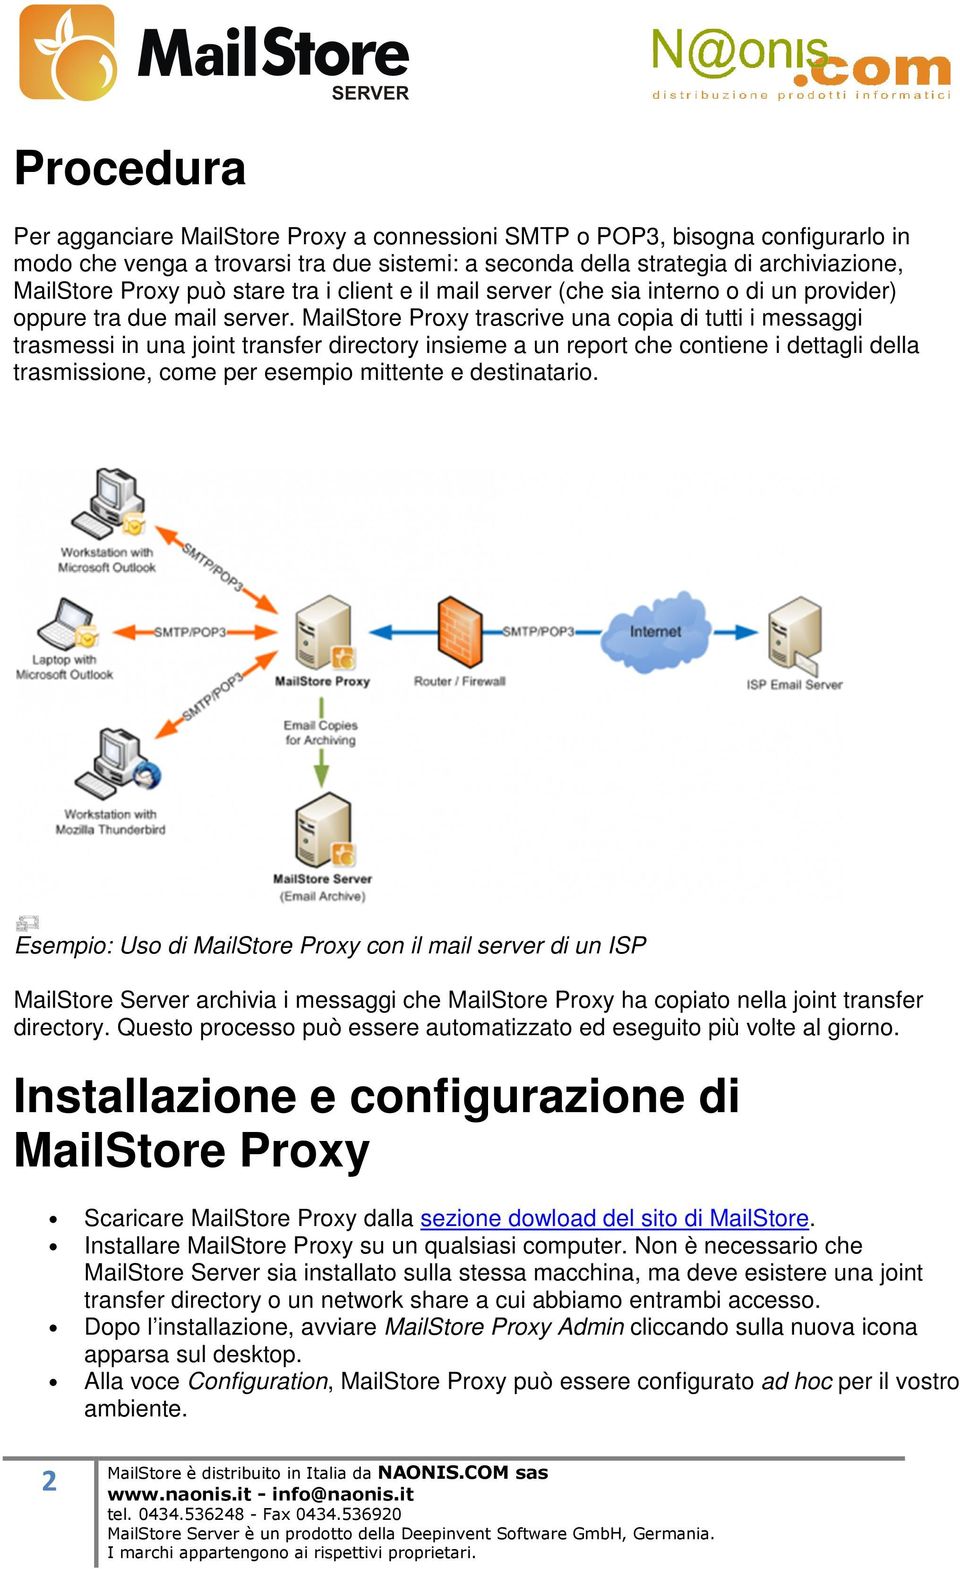 MailStore Proxy trascrive una copia di tutti i messaggi trasmessi in una joint transfer directory insieme a un report che contiene i dettagli della trasmissione, come per esempio mittente e